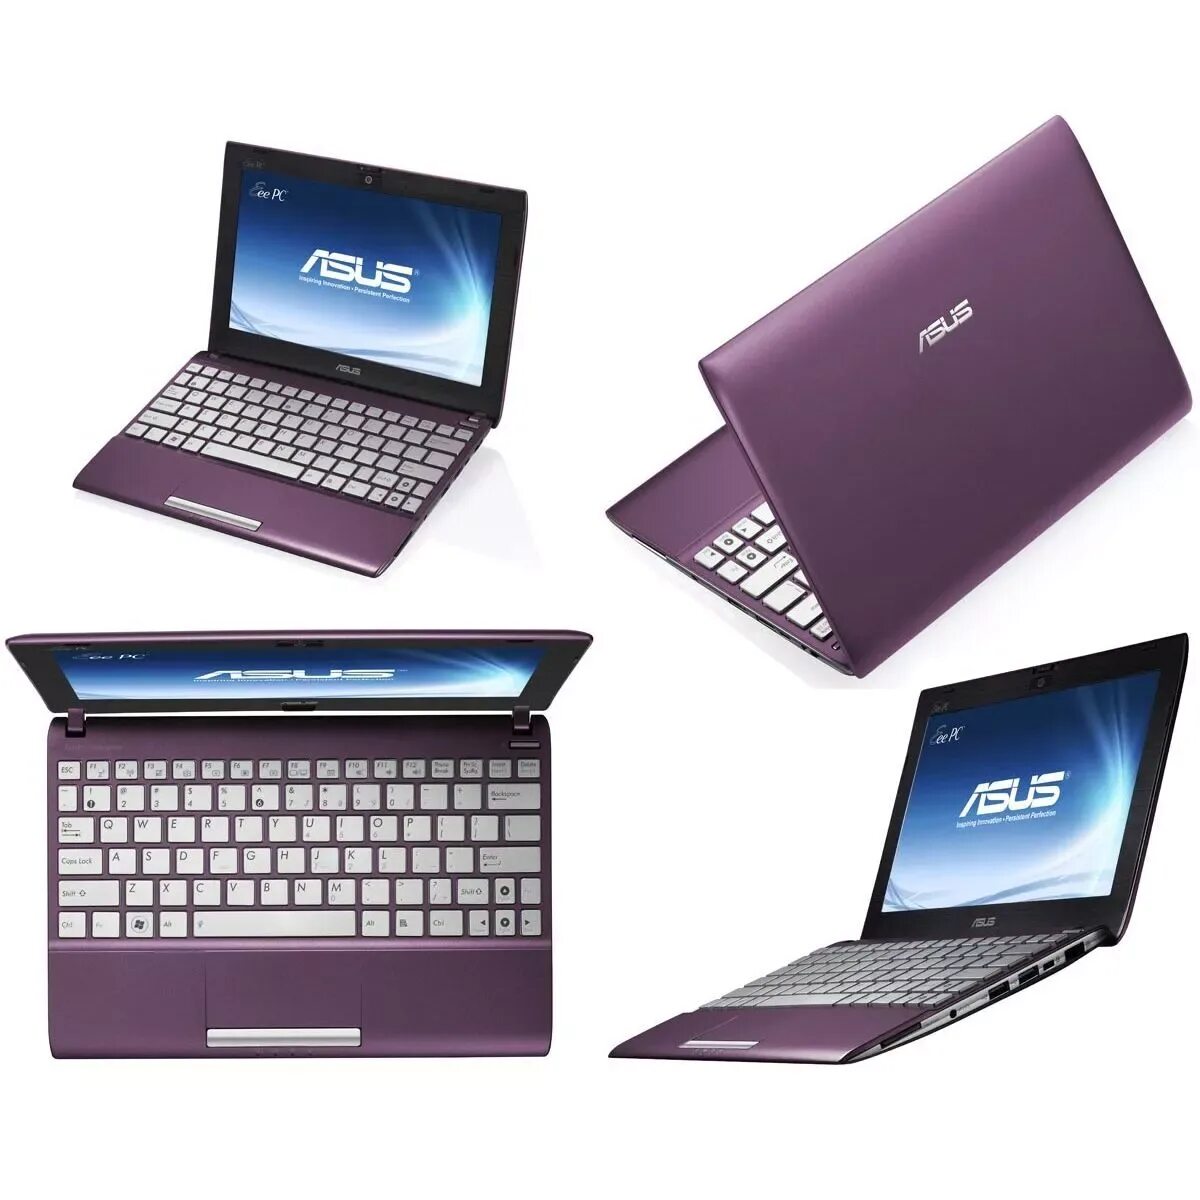 Модели маленьких ноутбуков. Ноутбуки асус нетбук. Нетбук ASUS фиолетовый. Маленький ноутбук ASUS Eee PC. ASUS Netbook 2012.